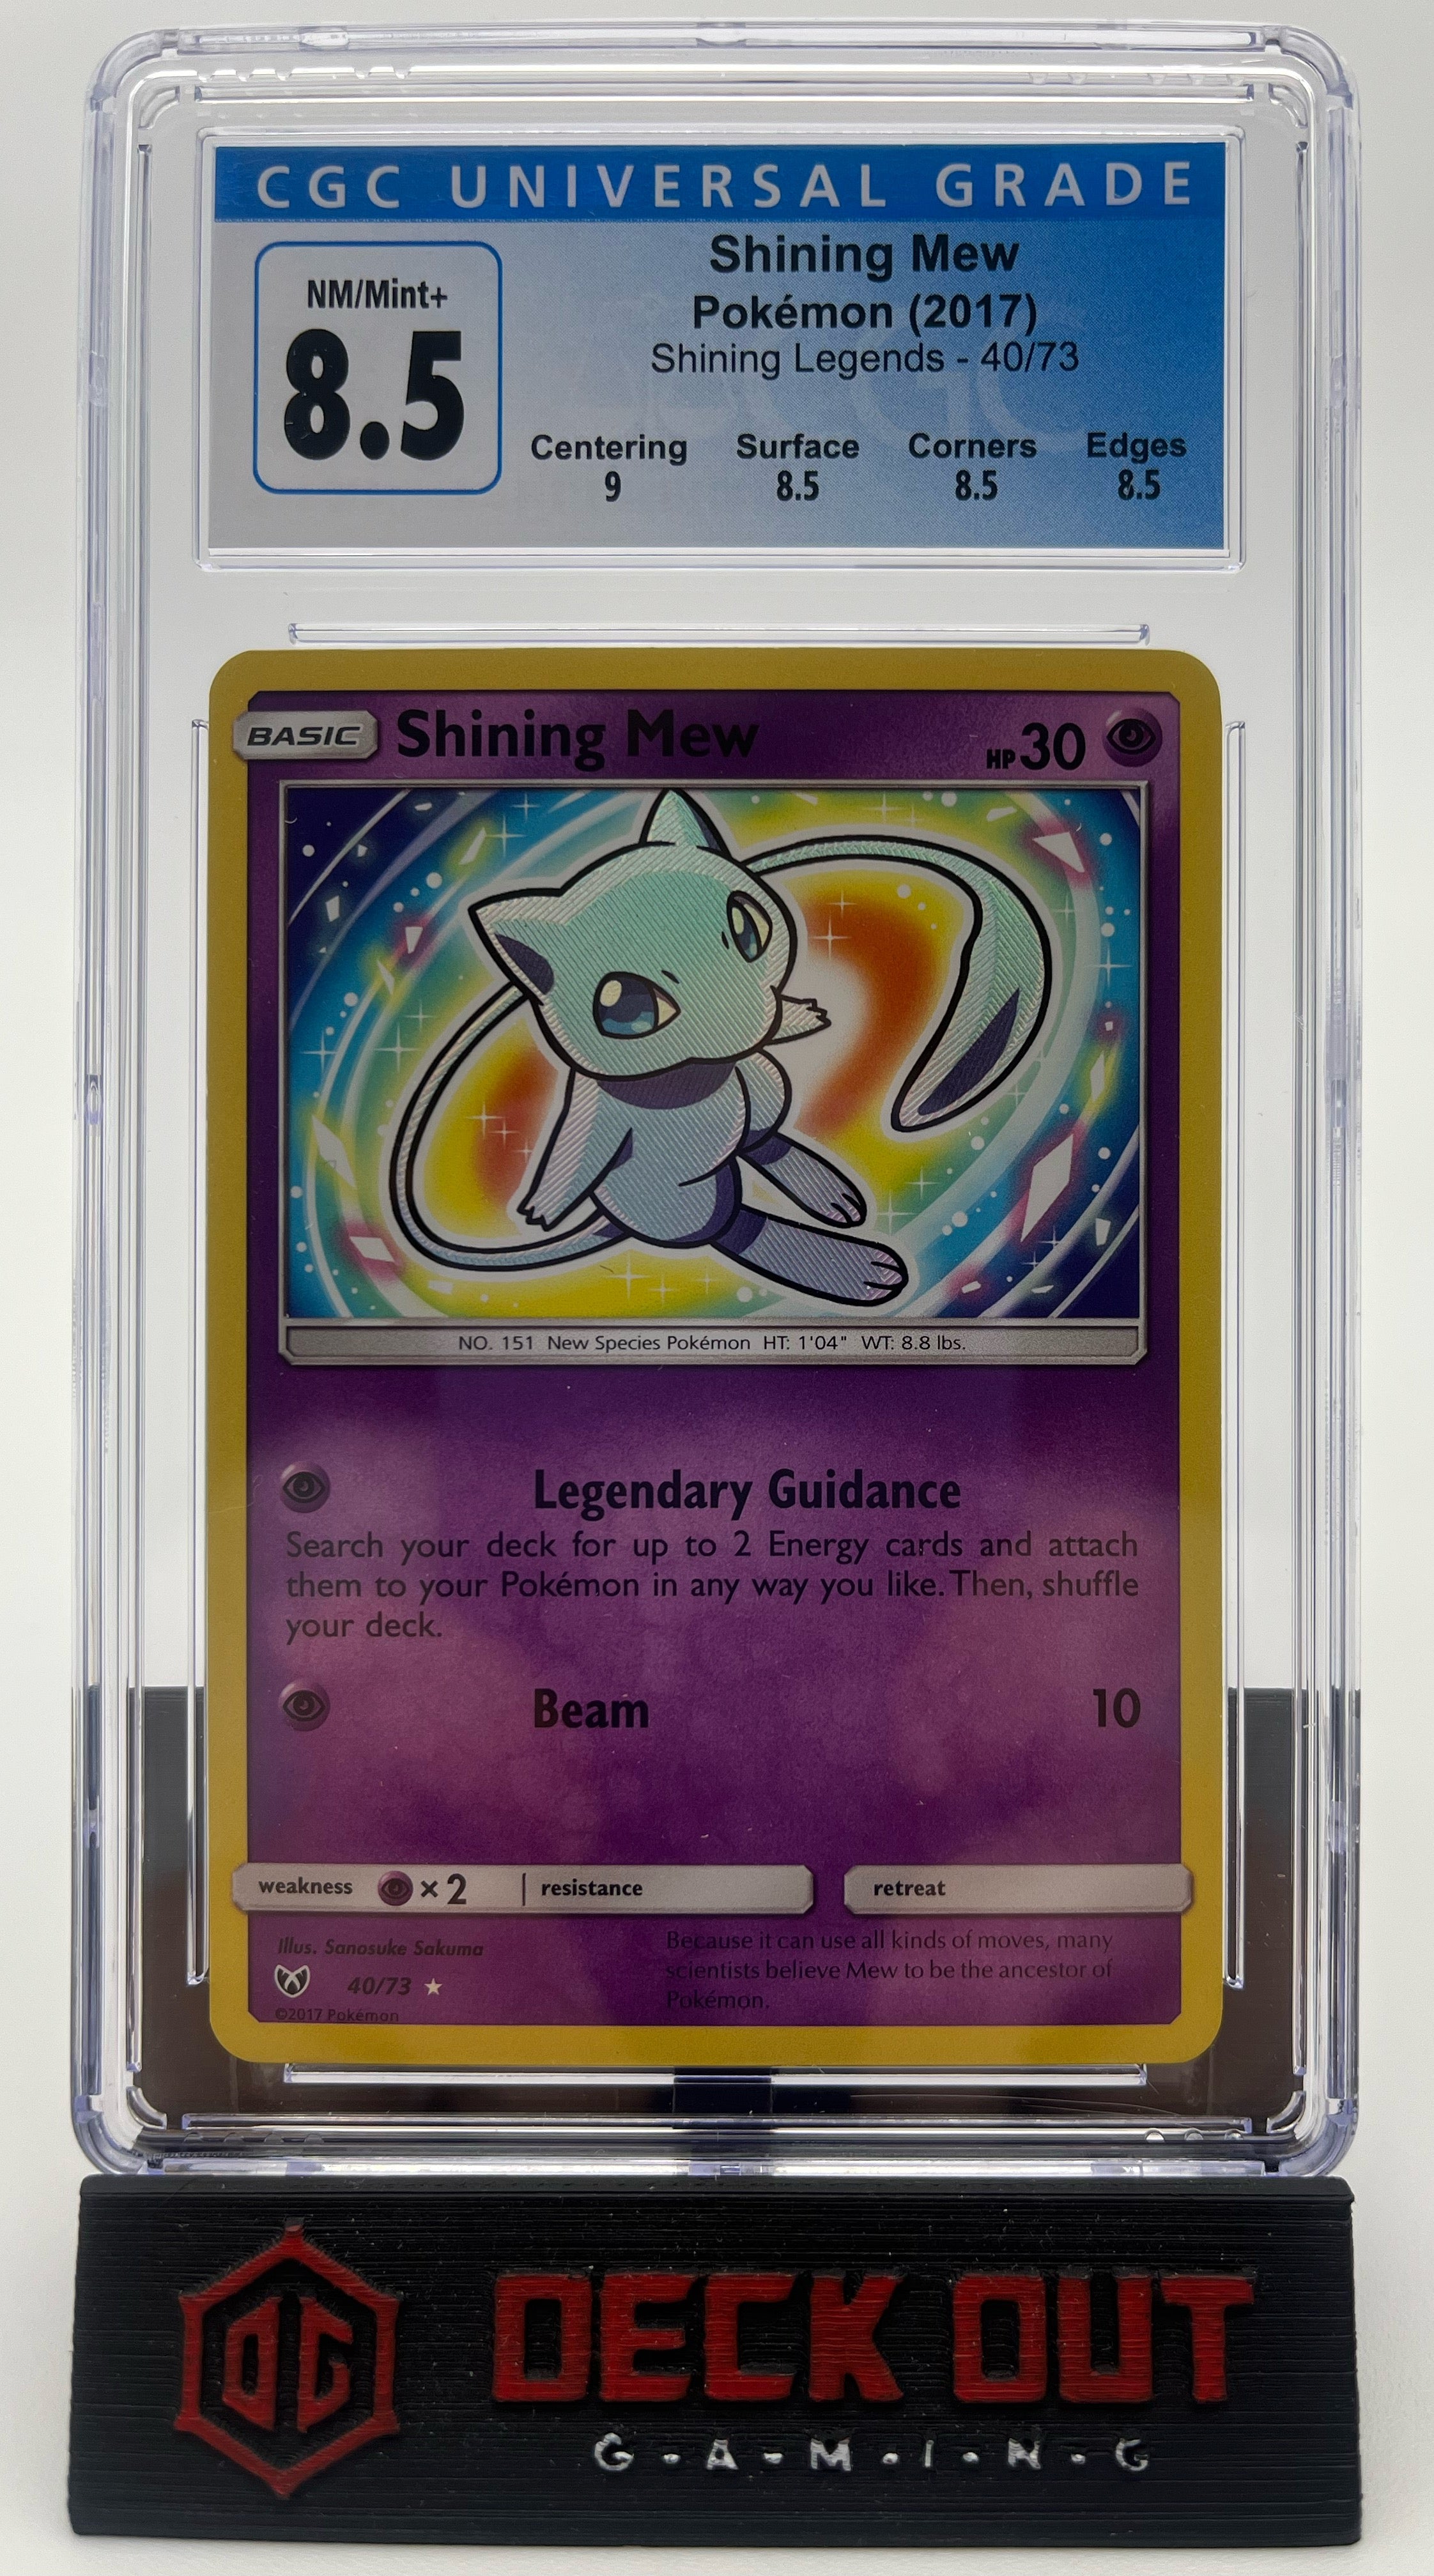 Shining Mew - Shining Legends - 40/73 - CGC 8.5 (9.0/8.5/8.5/8.5)